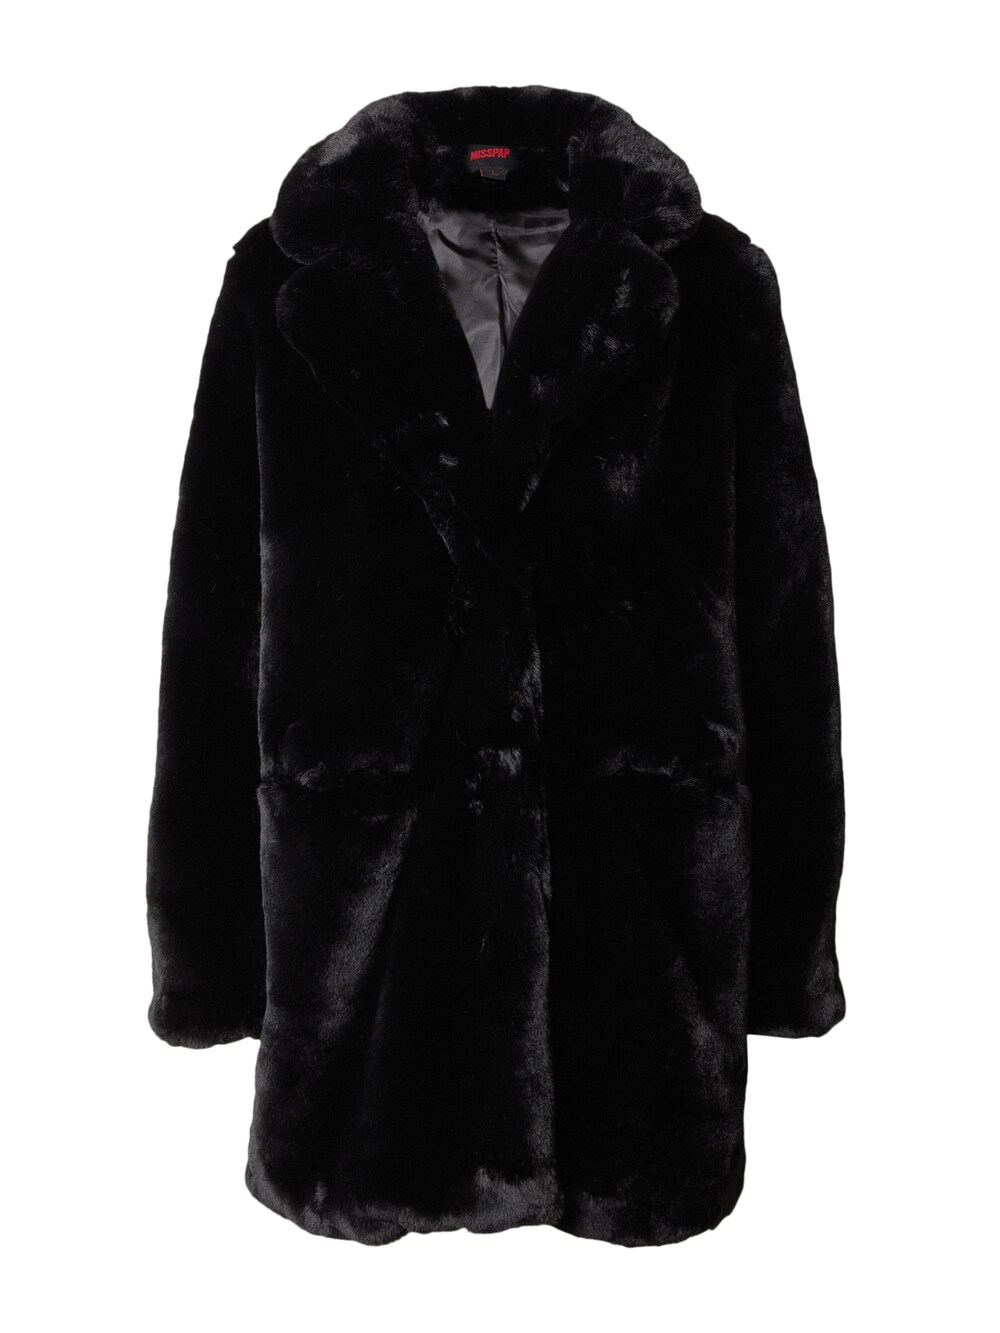 Межсезонное пальто Misspap, черный межсезонное пальто b young avan черный